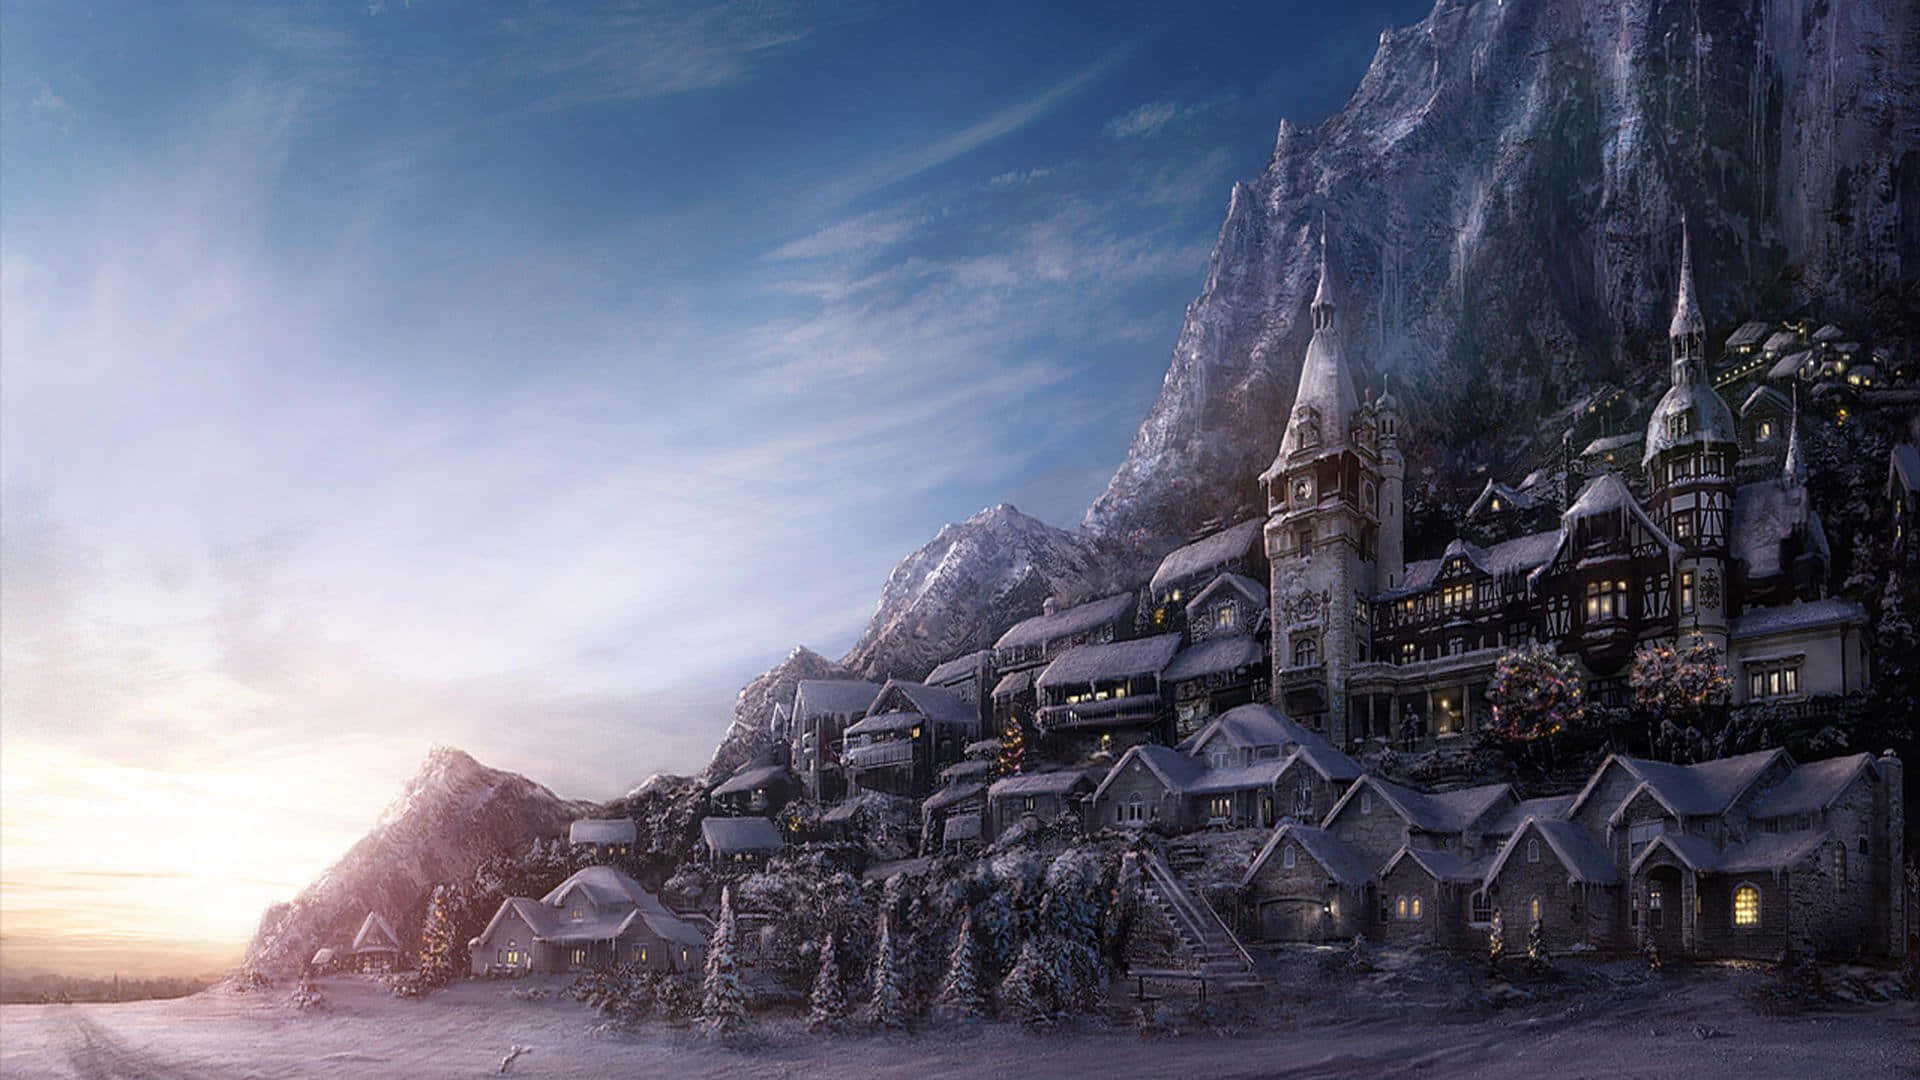 Snowy Village during Winter Wonderland Wallpaper